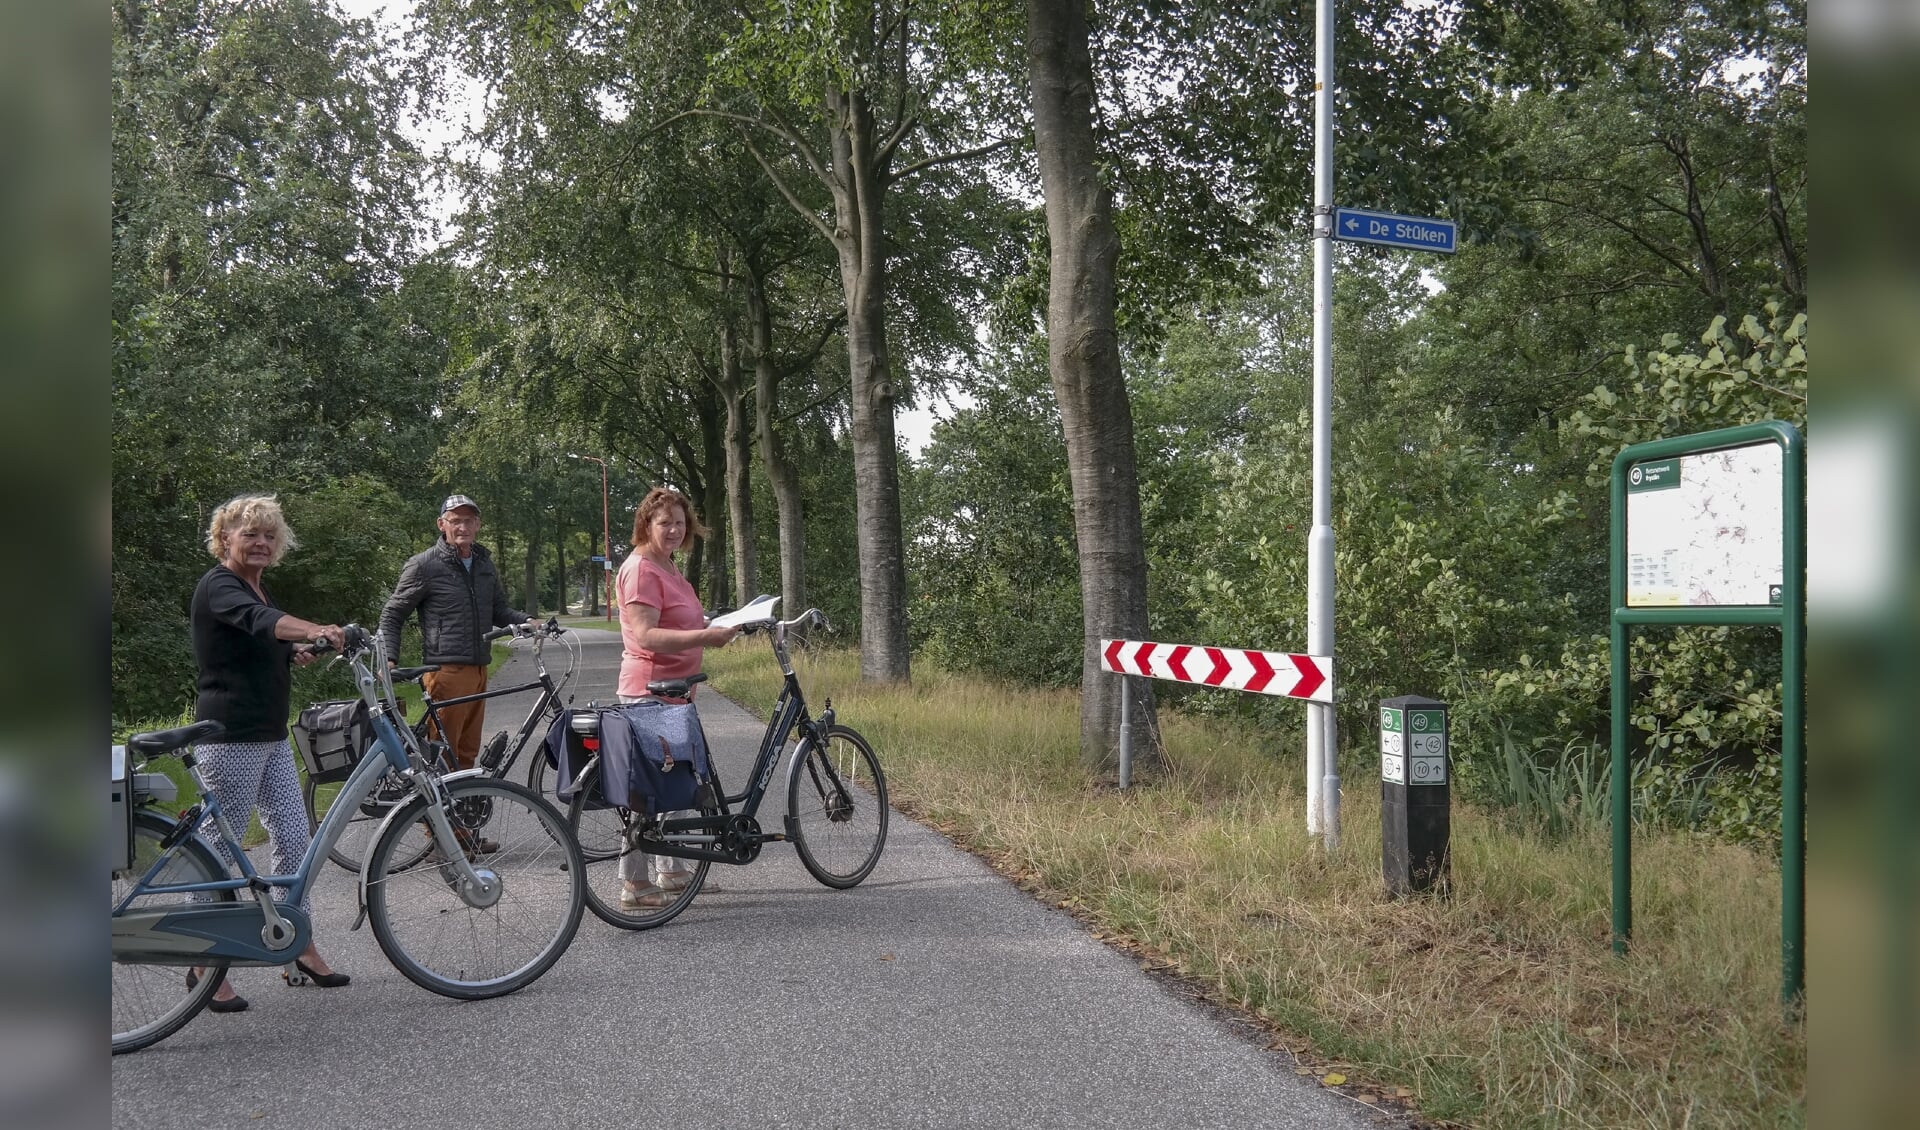 V.l.n.r. Baukje Tijsma, Jappie Borger en Martje Borger bij het fietsknooppunt 49 in Harkema. Ze zijn onderweg op de fiets, want ze organiseren op zaterdag 10 augustus een fietstocht vanuit Harkema. 